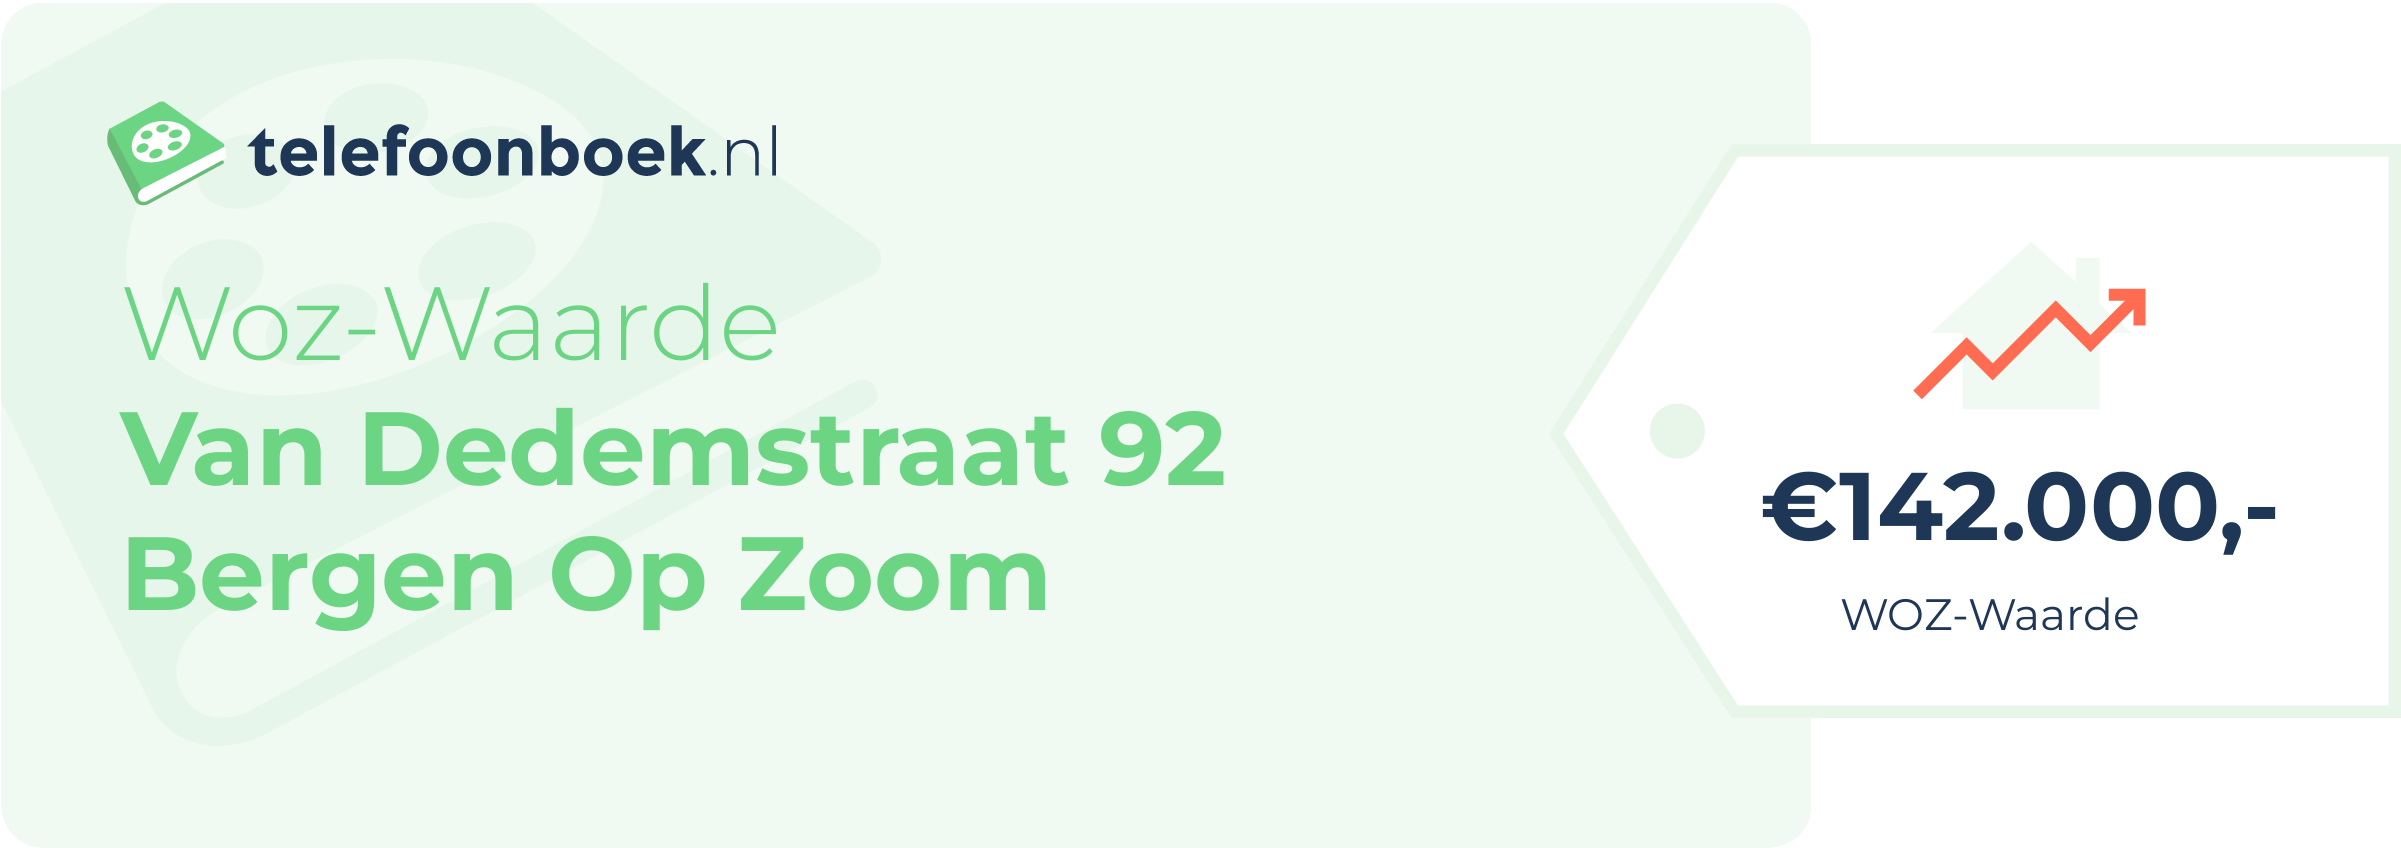 WOZ-waarde Van Dedemstraat 92 Bergen Op Zoom